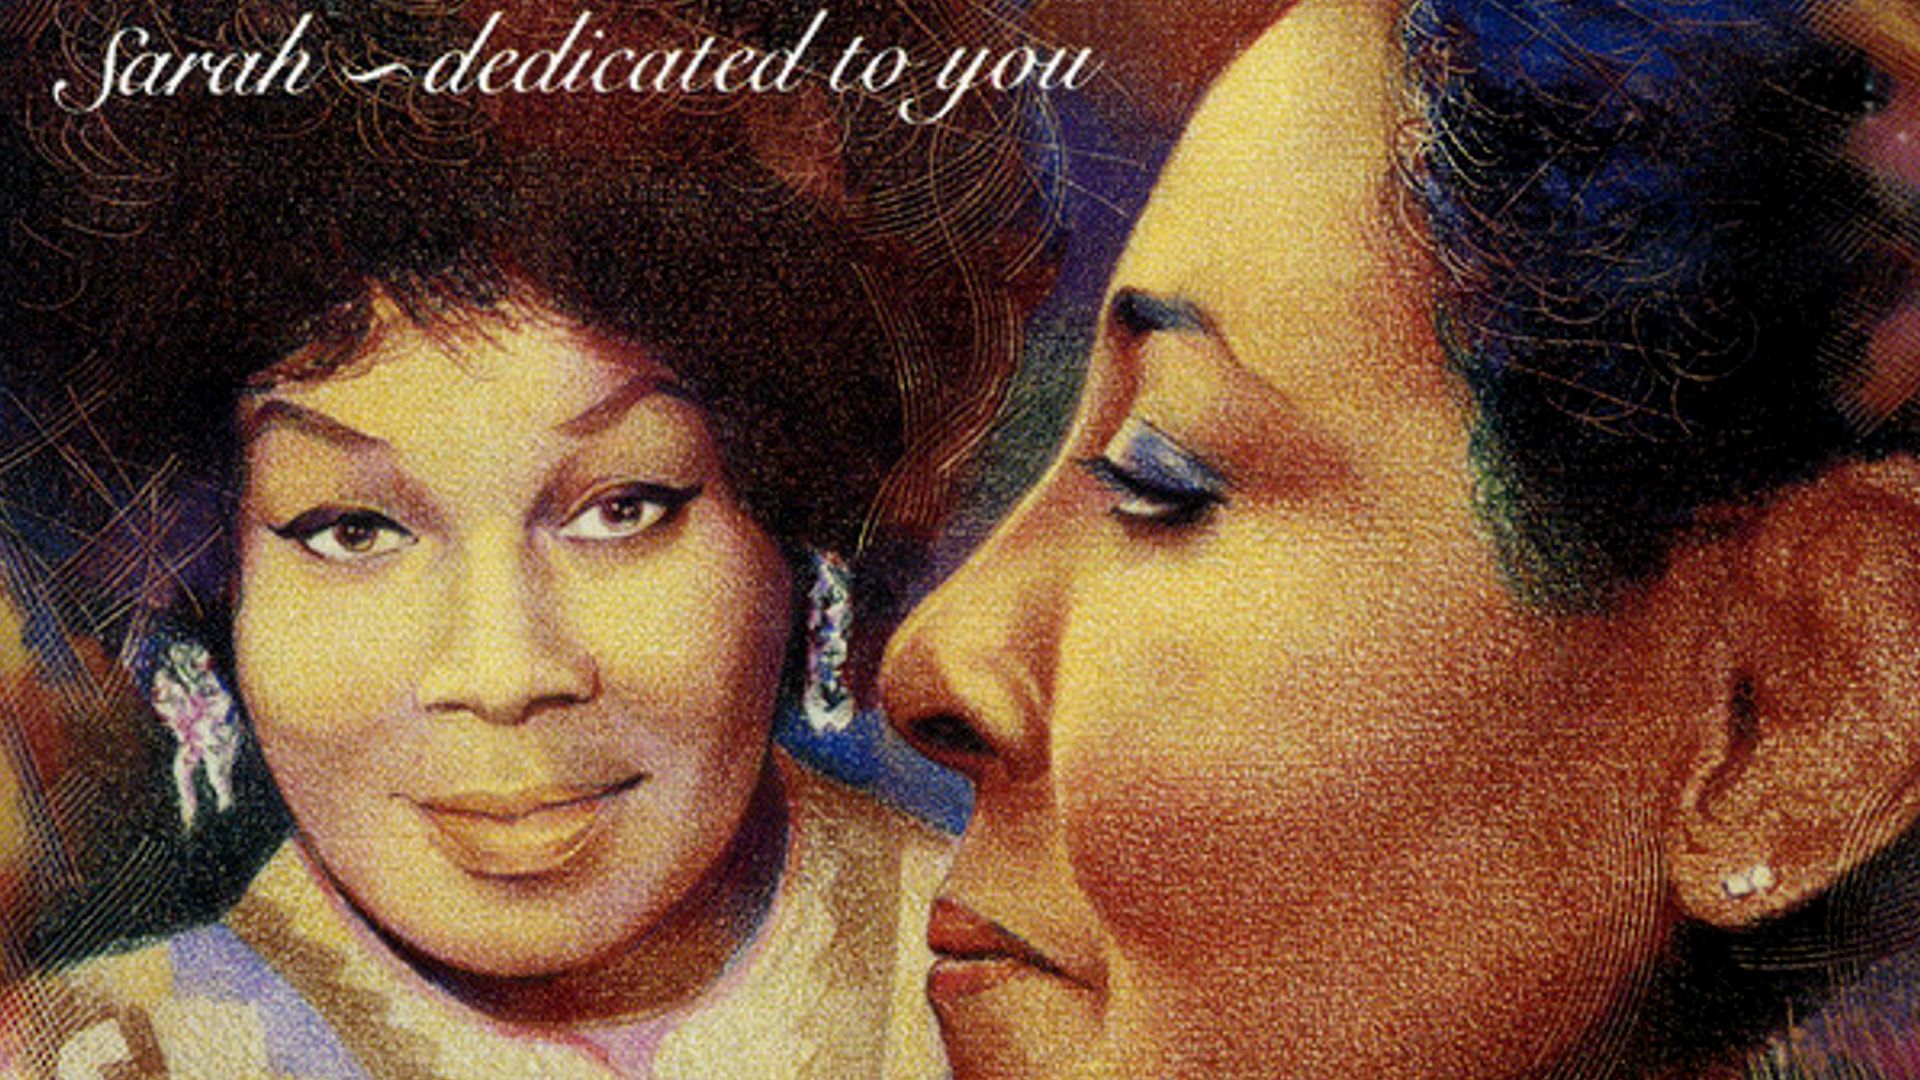 Il y a 30 ans s'enregistrait l'album "Sarah, Dedicated To You" de Carmen McRae